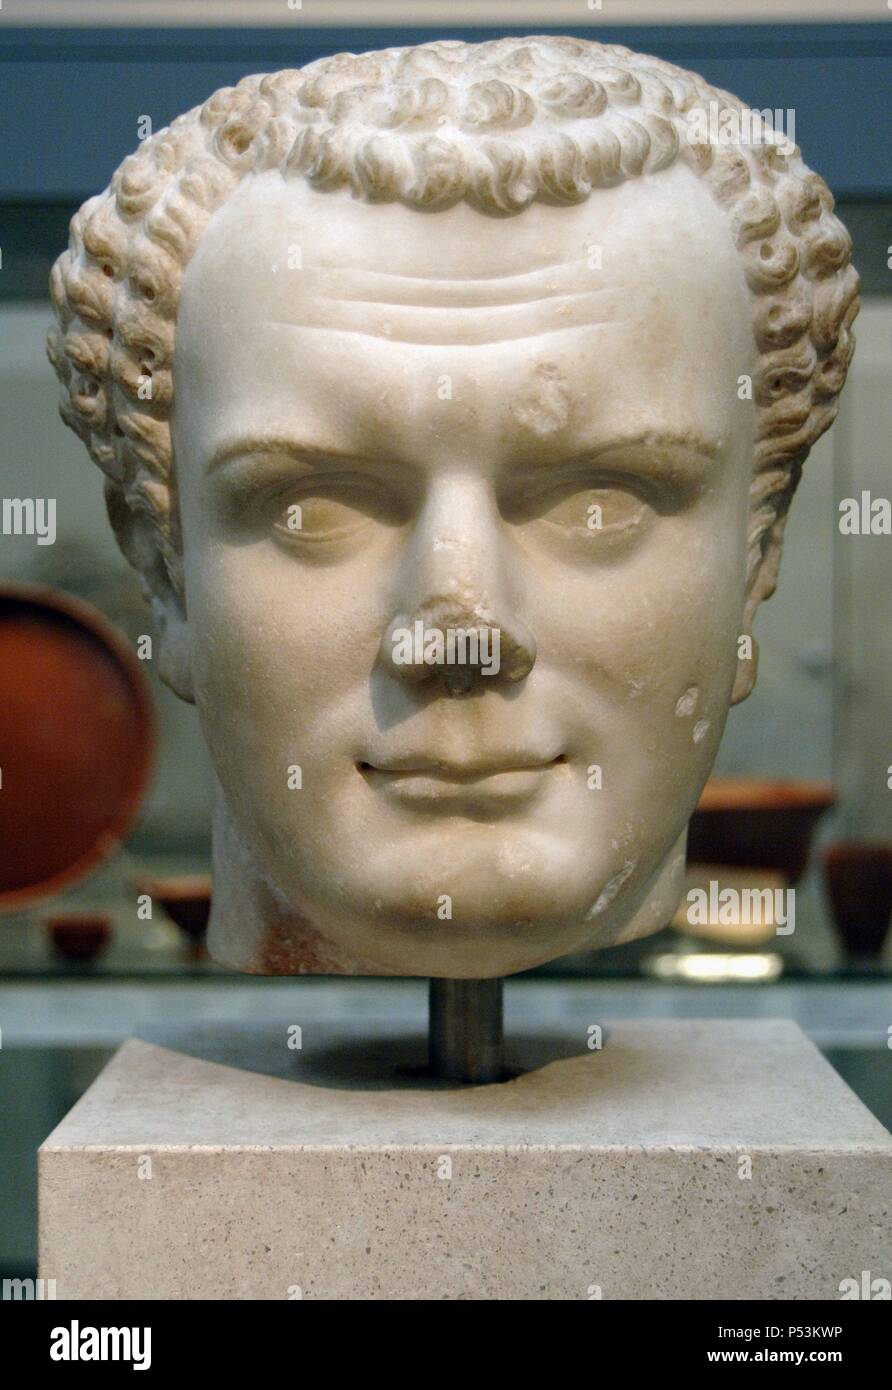 Titus (39-81 N.CHR.). Römische Kaiser. Flavische Dynastie. Büste. Marmor. 70-80 AD. Aus Utica, in der Nähe von Carthage. British Museum. London. England. Vereinigtes Königreich. Stockfoto